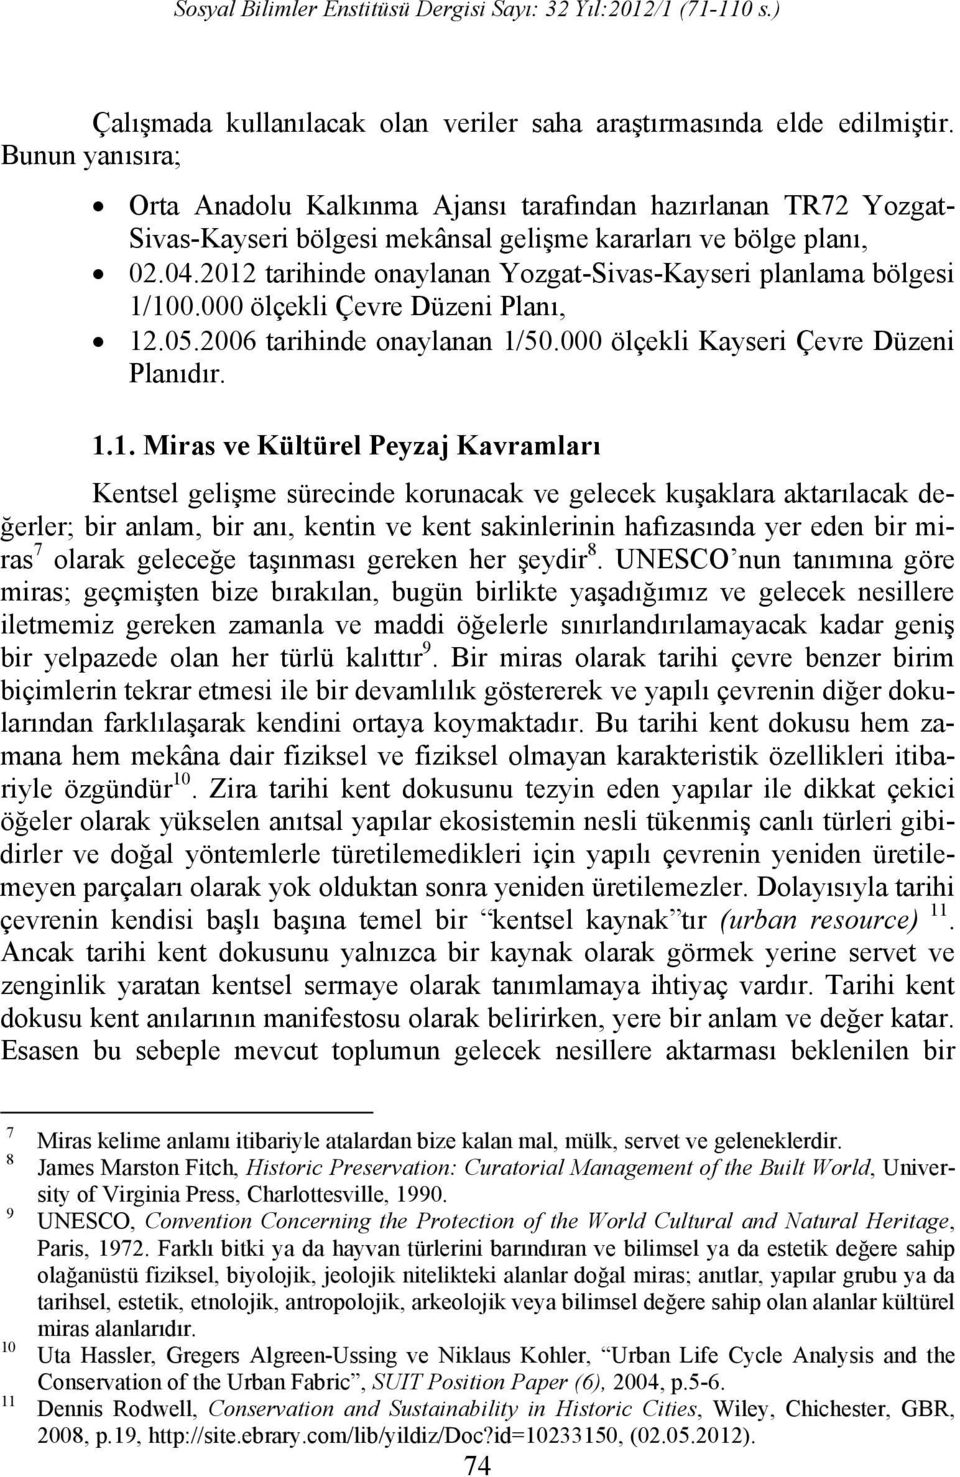 2012 tarihinde onaylanan Yozgat-Sivas-Kayseri planlama bölgesi 1/100.000 ölçekli Çevre Düzeni Planı, 12.05.2006 tarihinde onaylanan 1/50.000 ölçekli Kayseri Çevre Düzeni Planıdır. 1.1. Miras ve